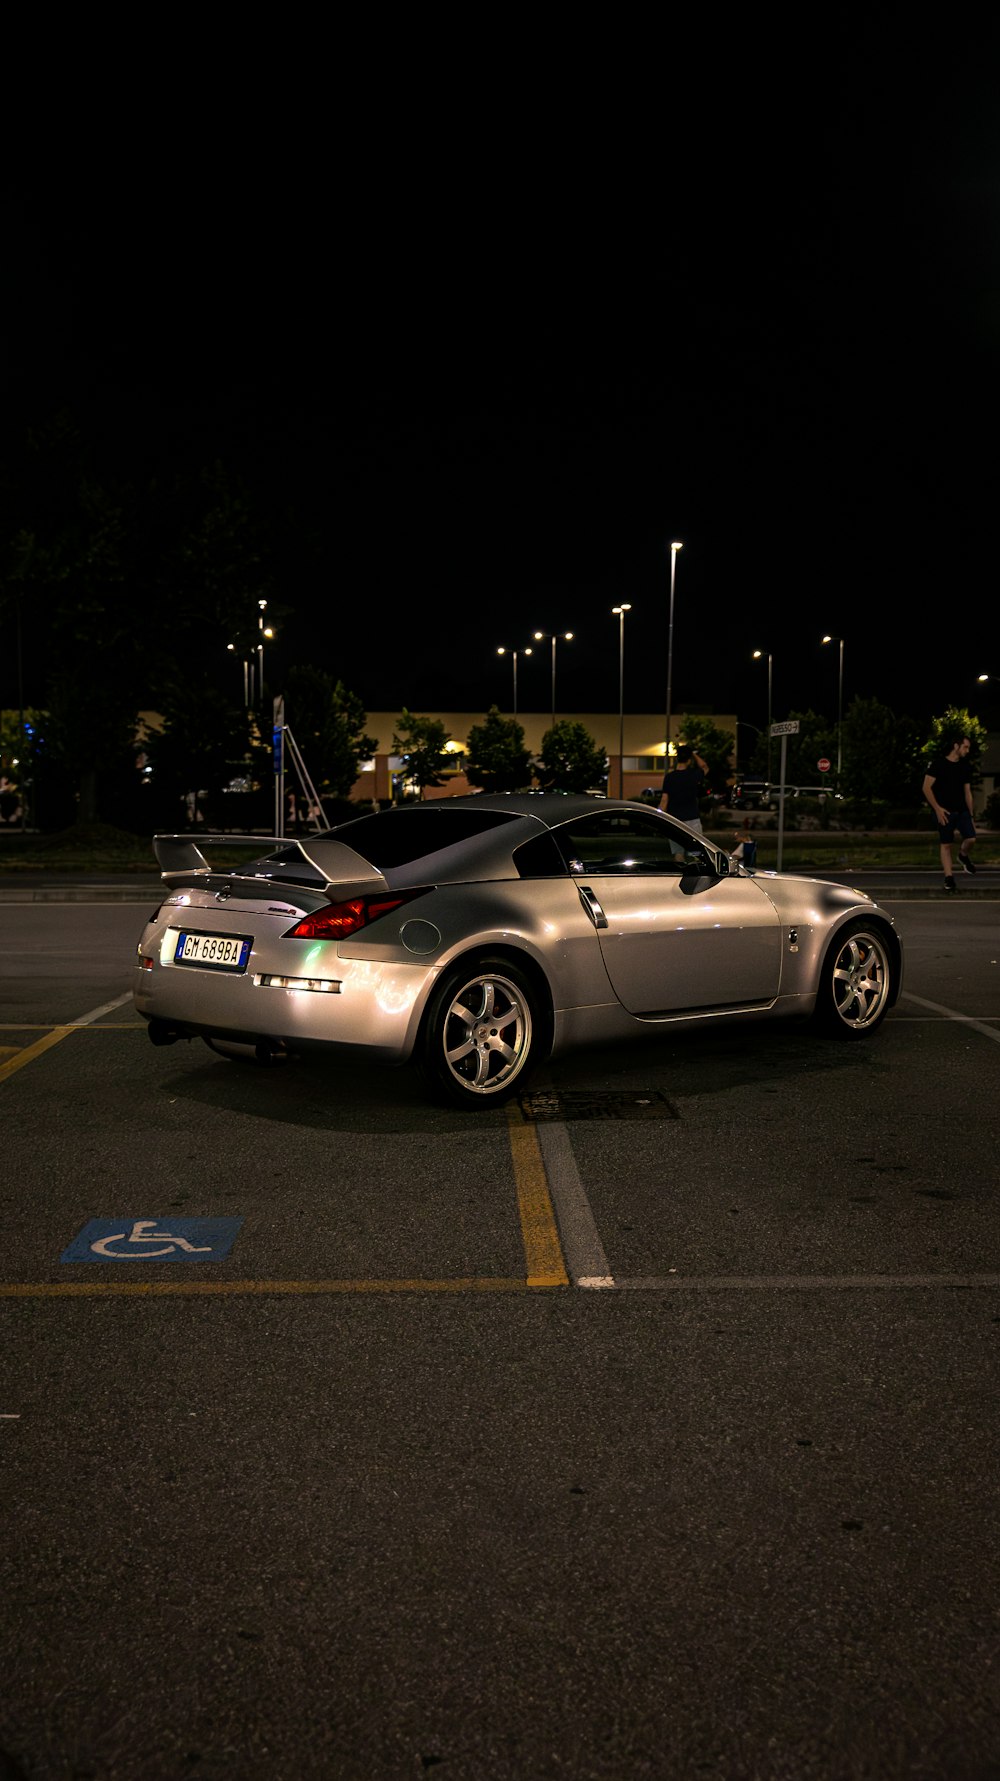 Ein silberner Sportwagen, der auf einem Parkplatz geparkt ist